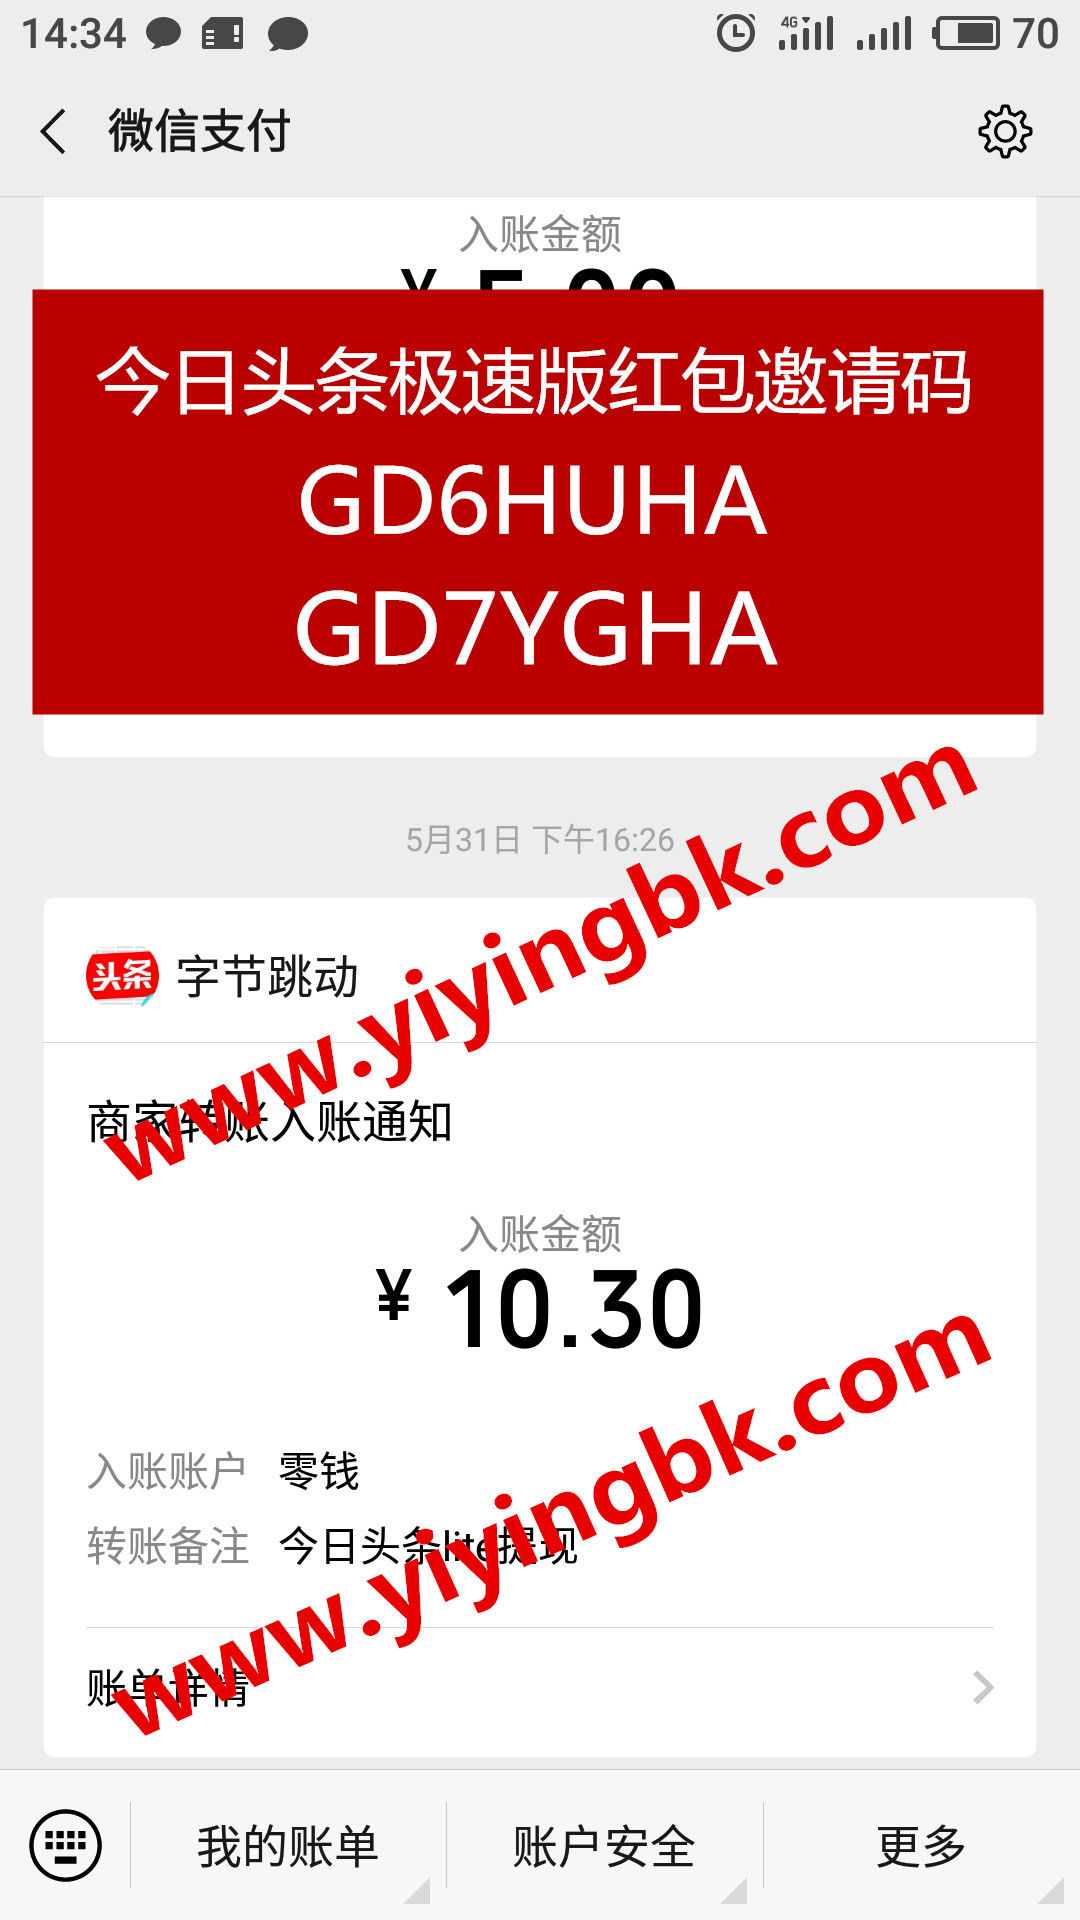 今日头条极速版，免费领红包赚零花钱，微信提现10.3元支付极速到账。www.yiyingbk.com